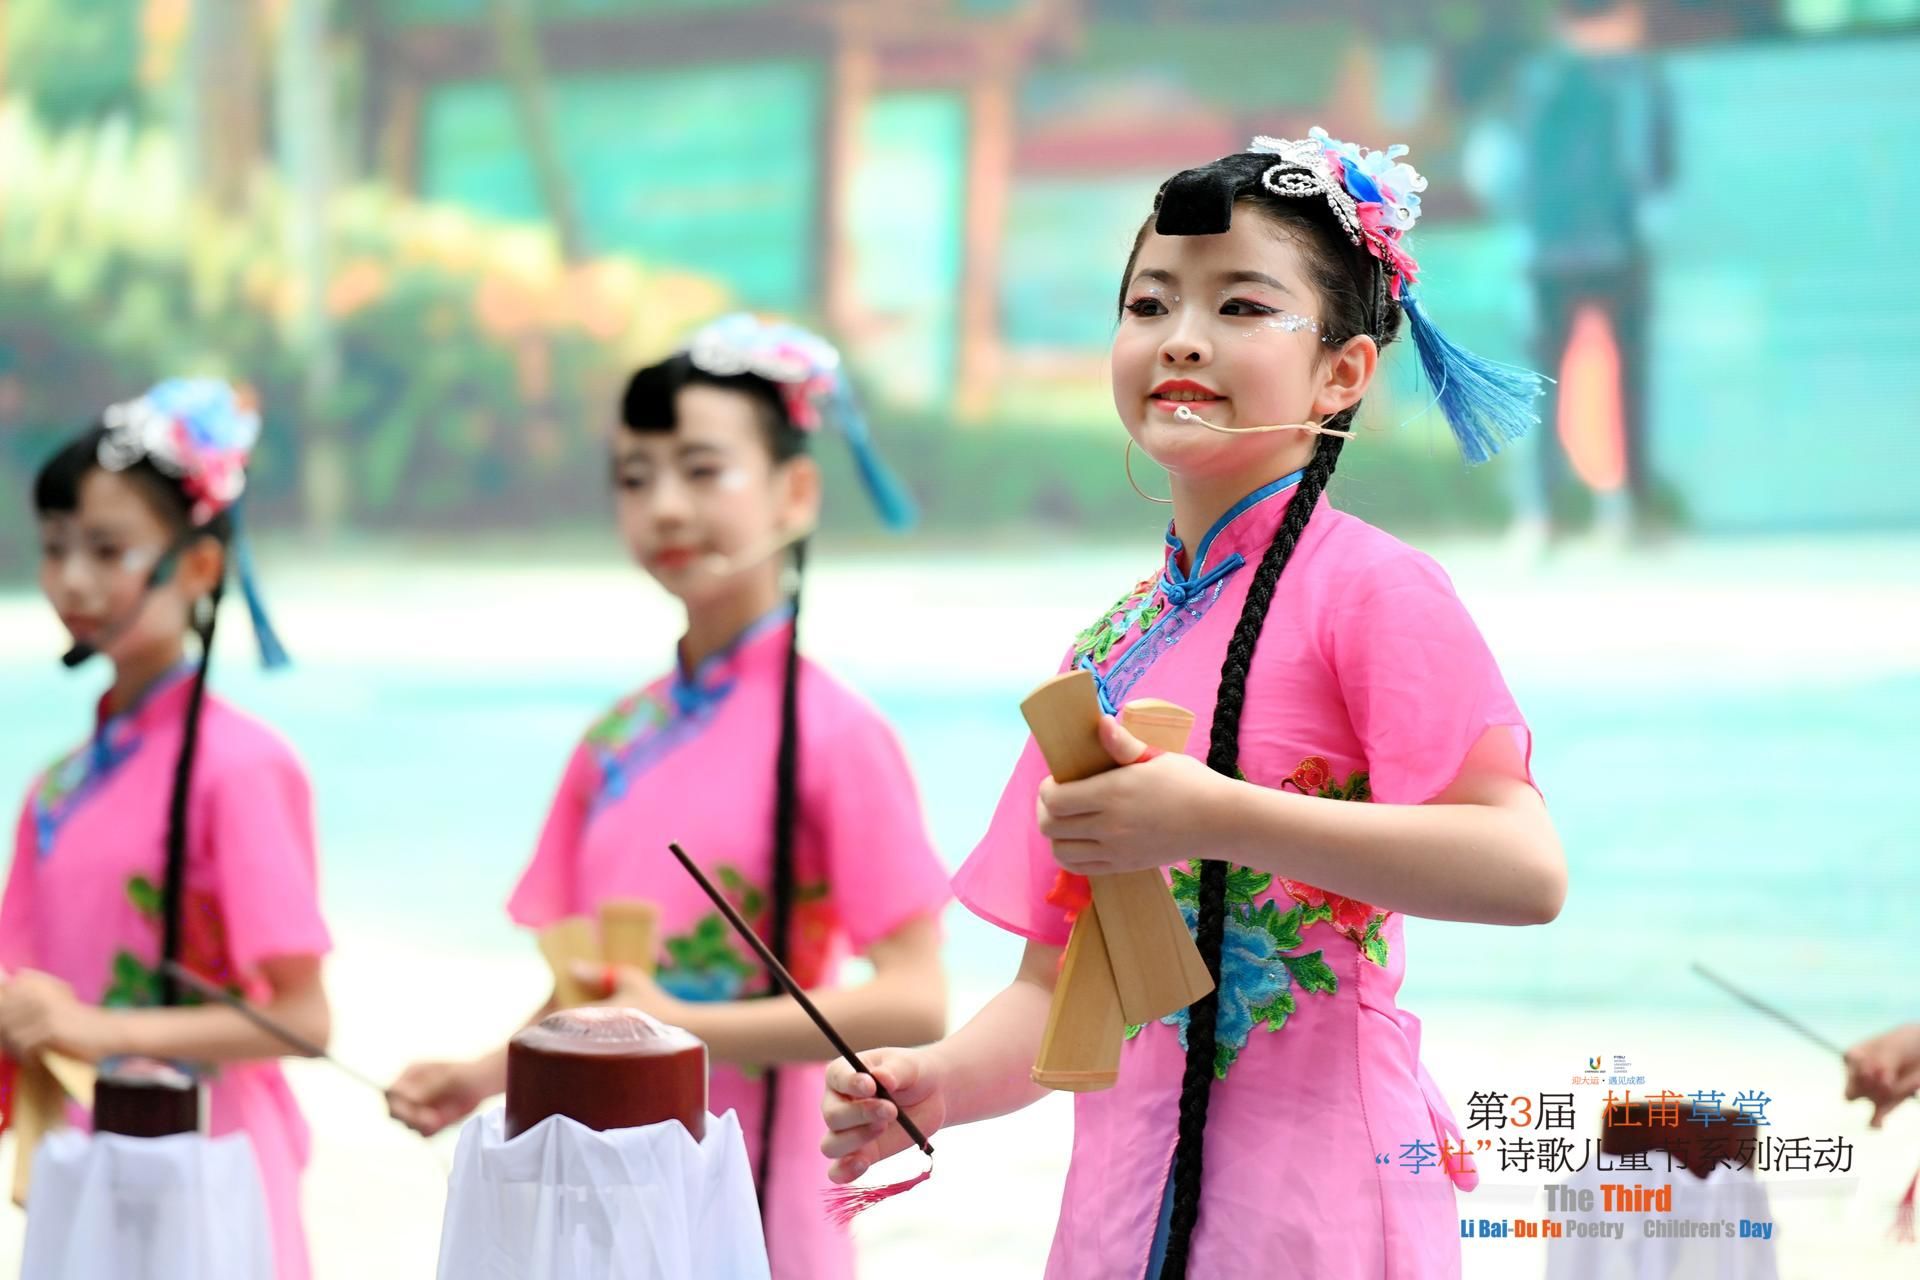 第三届杜甫草堂“李杜”诗歌儿童节系列活动举行